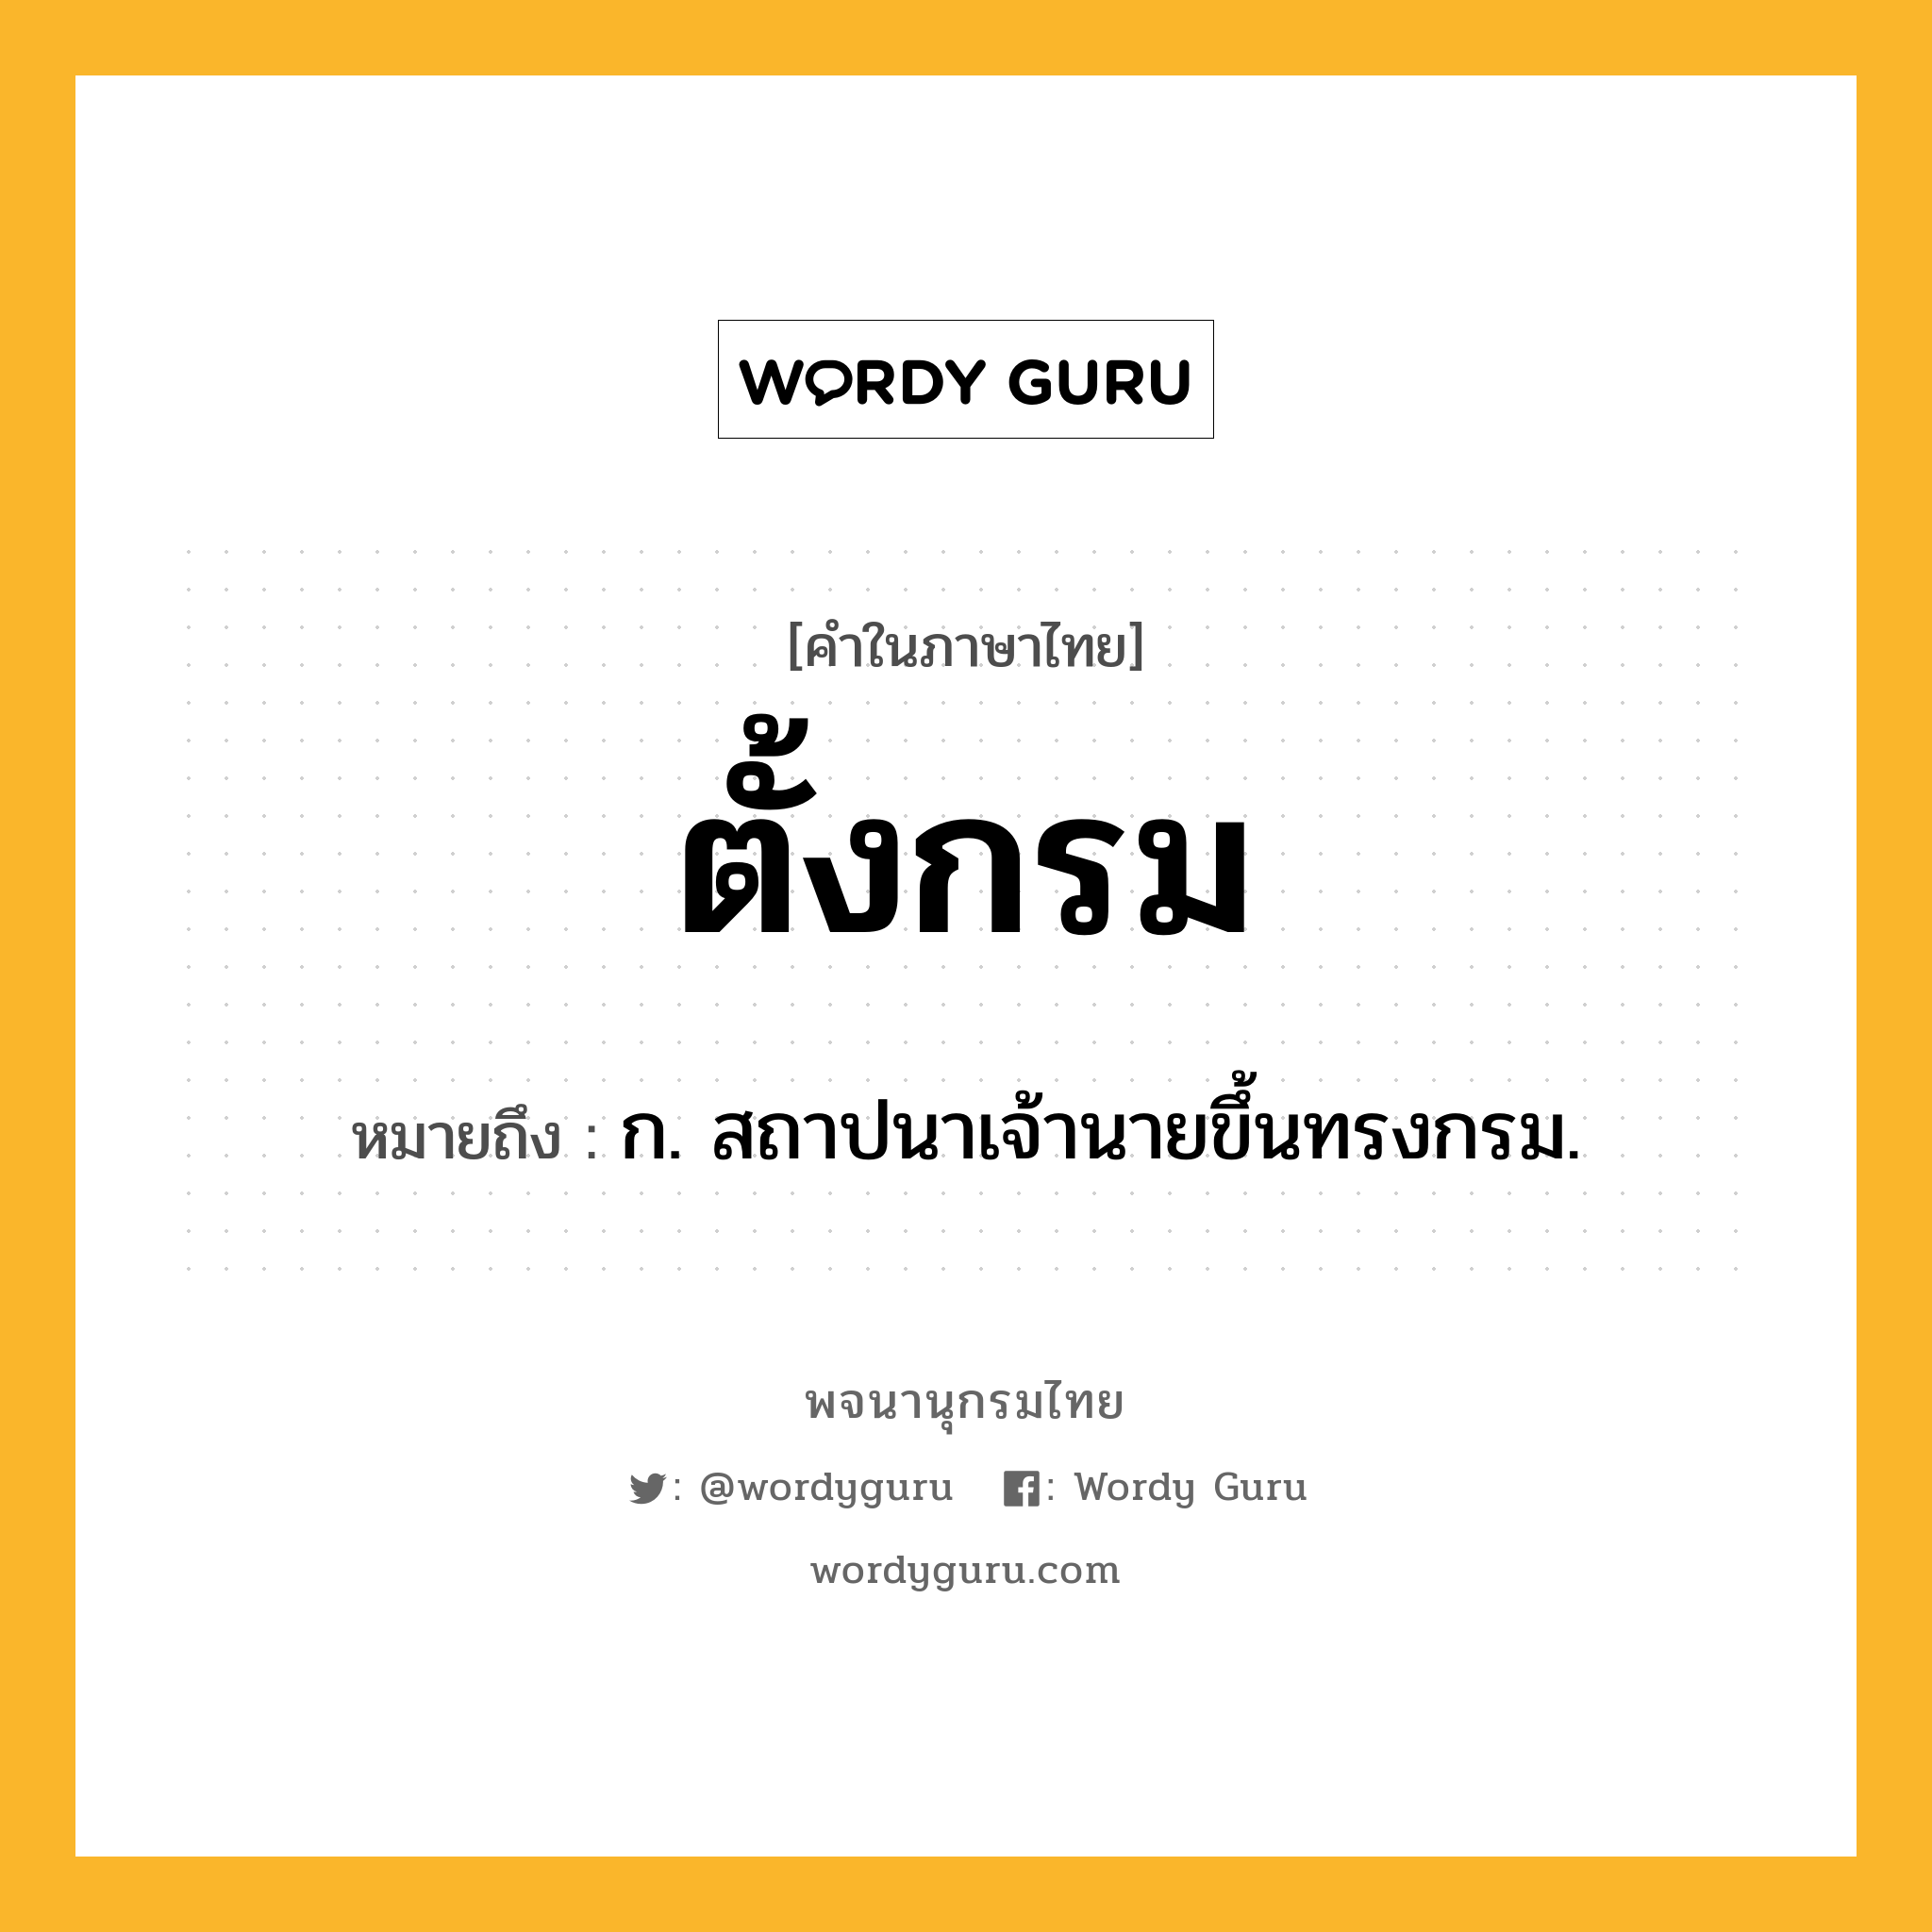 ตั้งกรม ความหมาย หมายถึงอะไร?, คำในภาษาไทย ตั้งกรม หมายถึง ก. สถาปนาเจ้านายขึ้นทรงกรม.